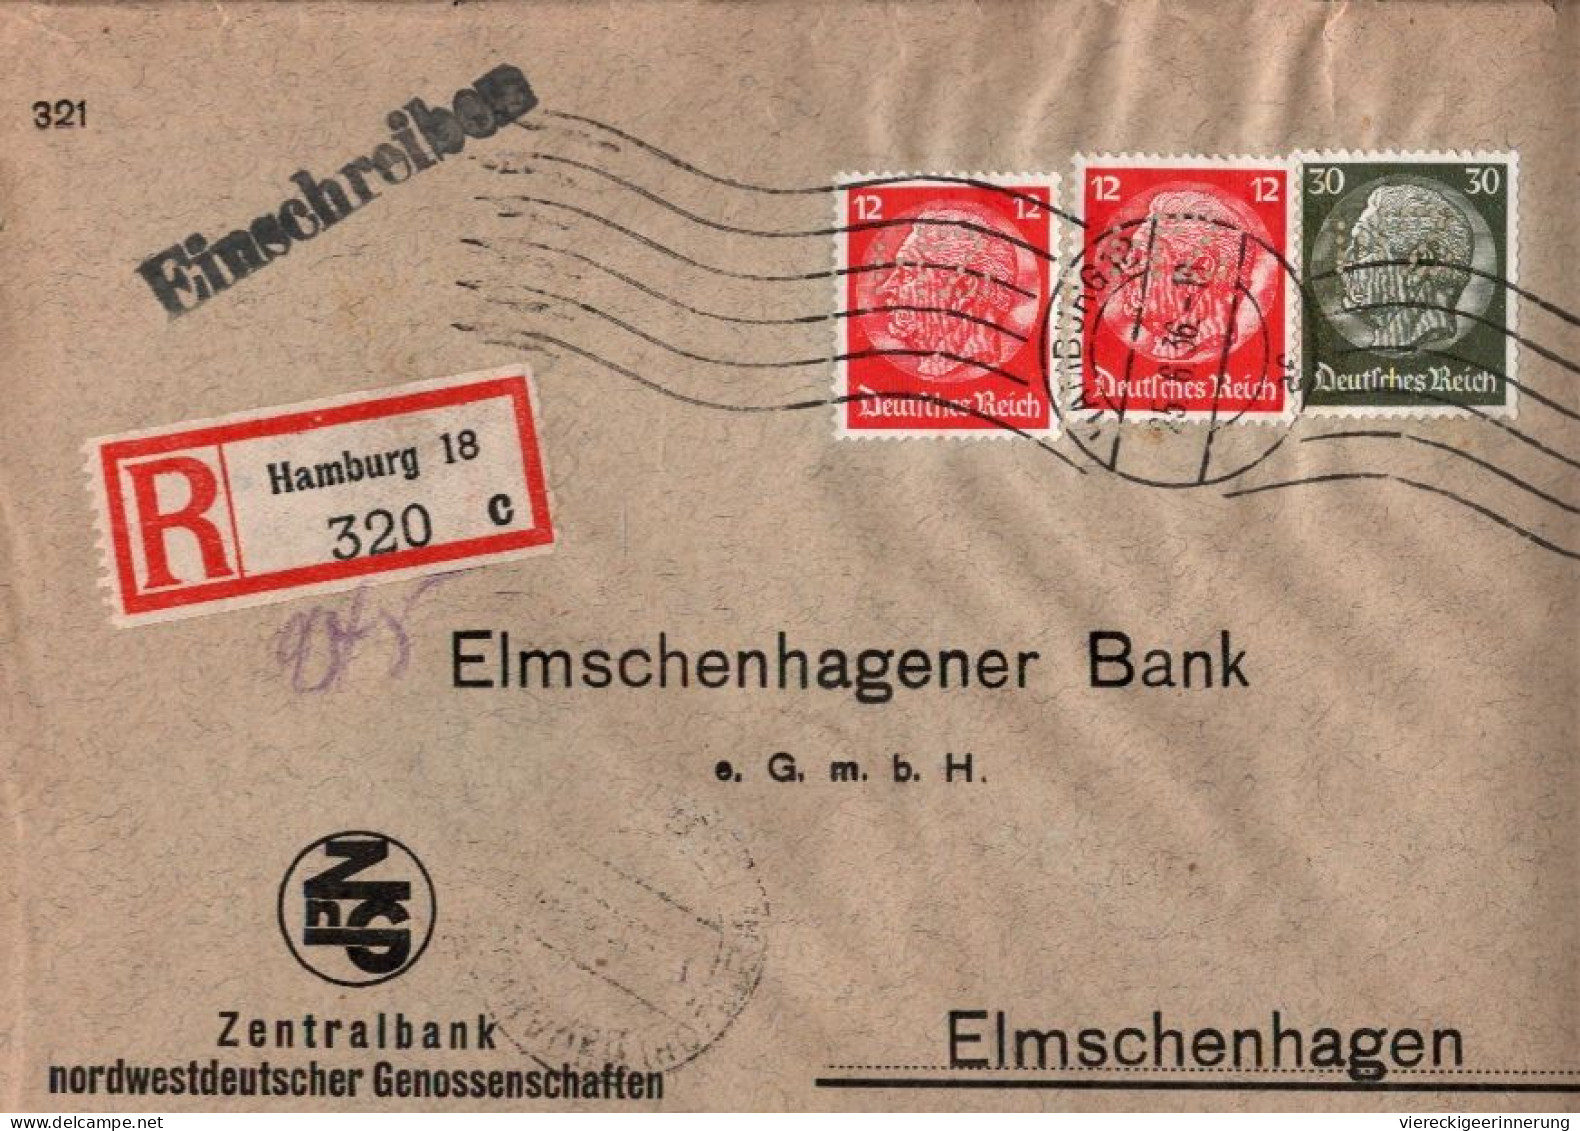 ! 1936 Einschreiben Aus Hamburg Nach Elmschenhagen, Bank, Lochungen, Perfins On Stamps - Covers & Documents